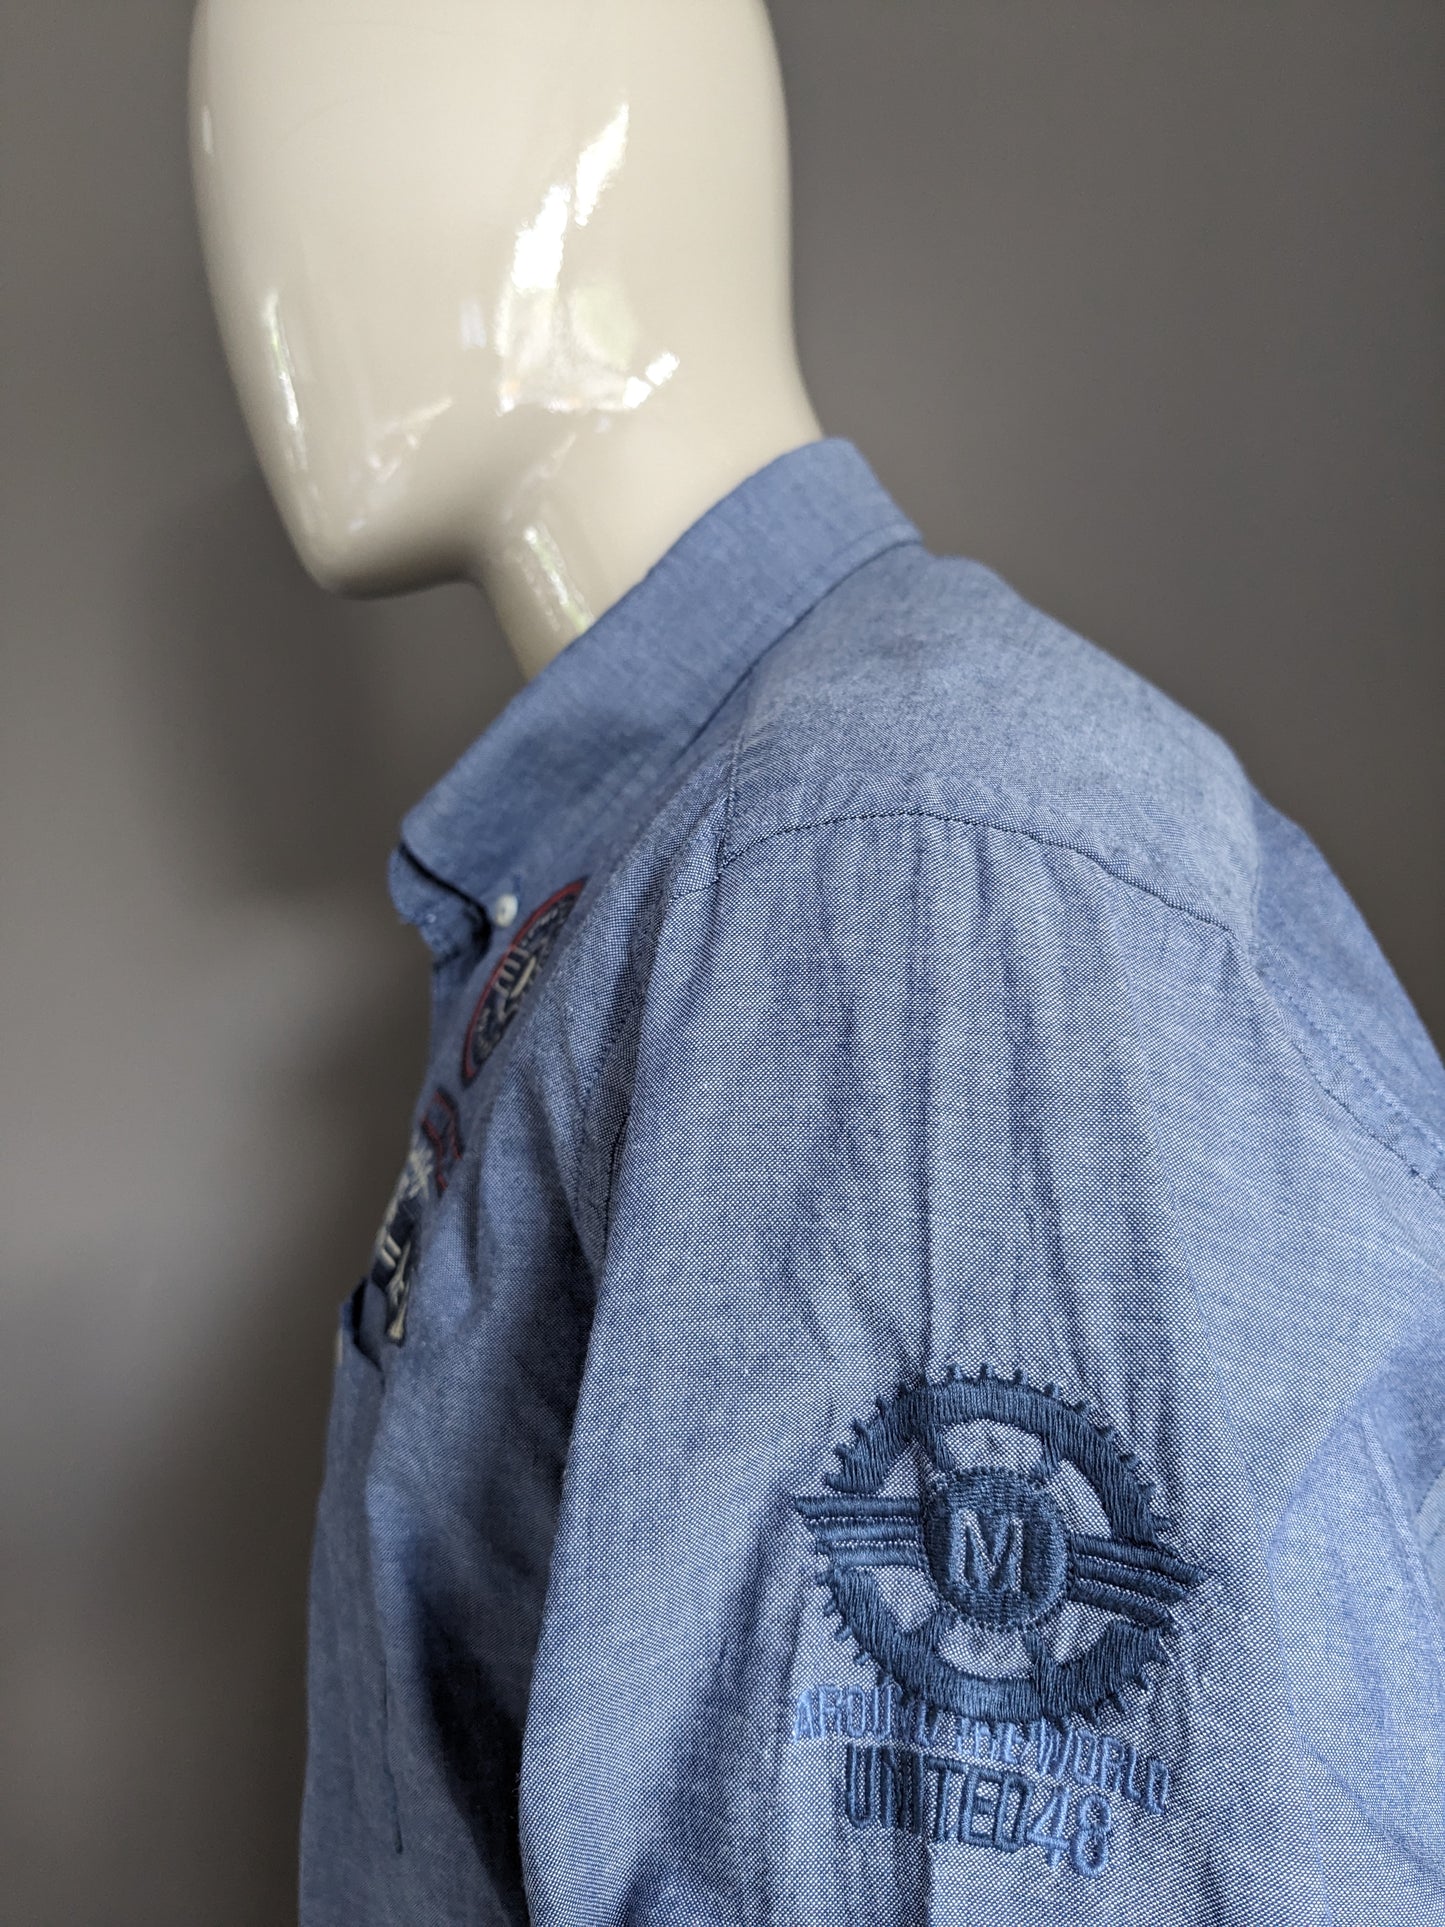 Tailor & Son Shirt. Bleu mélangé avec des applications. Taille 2xl / xxl.